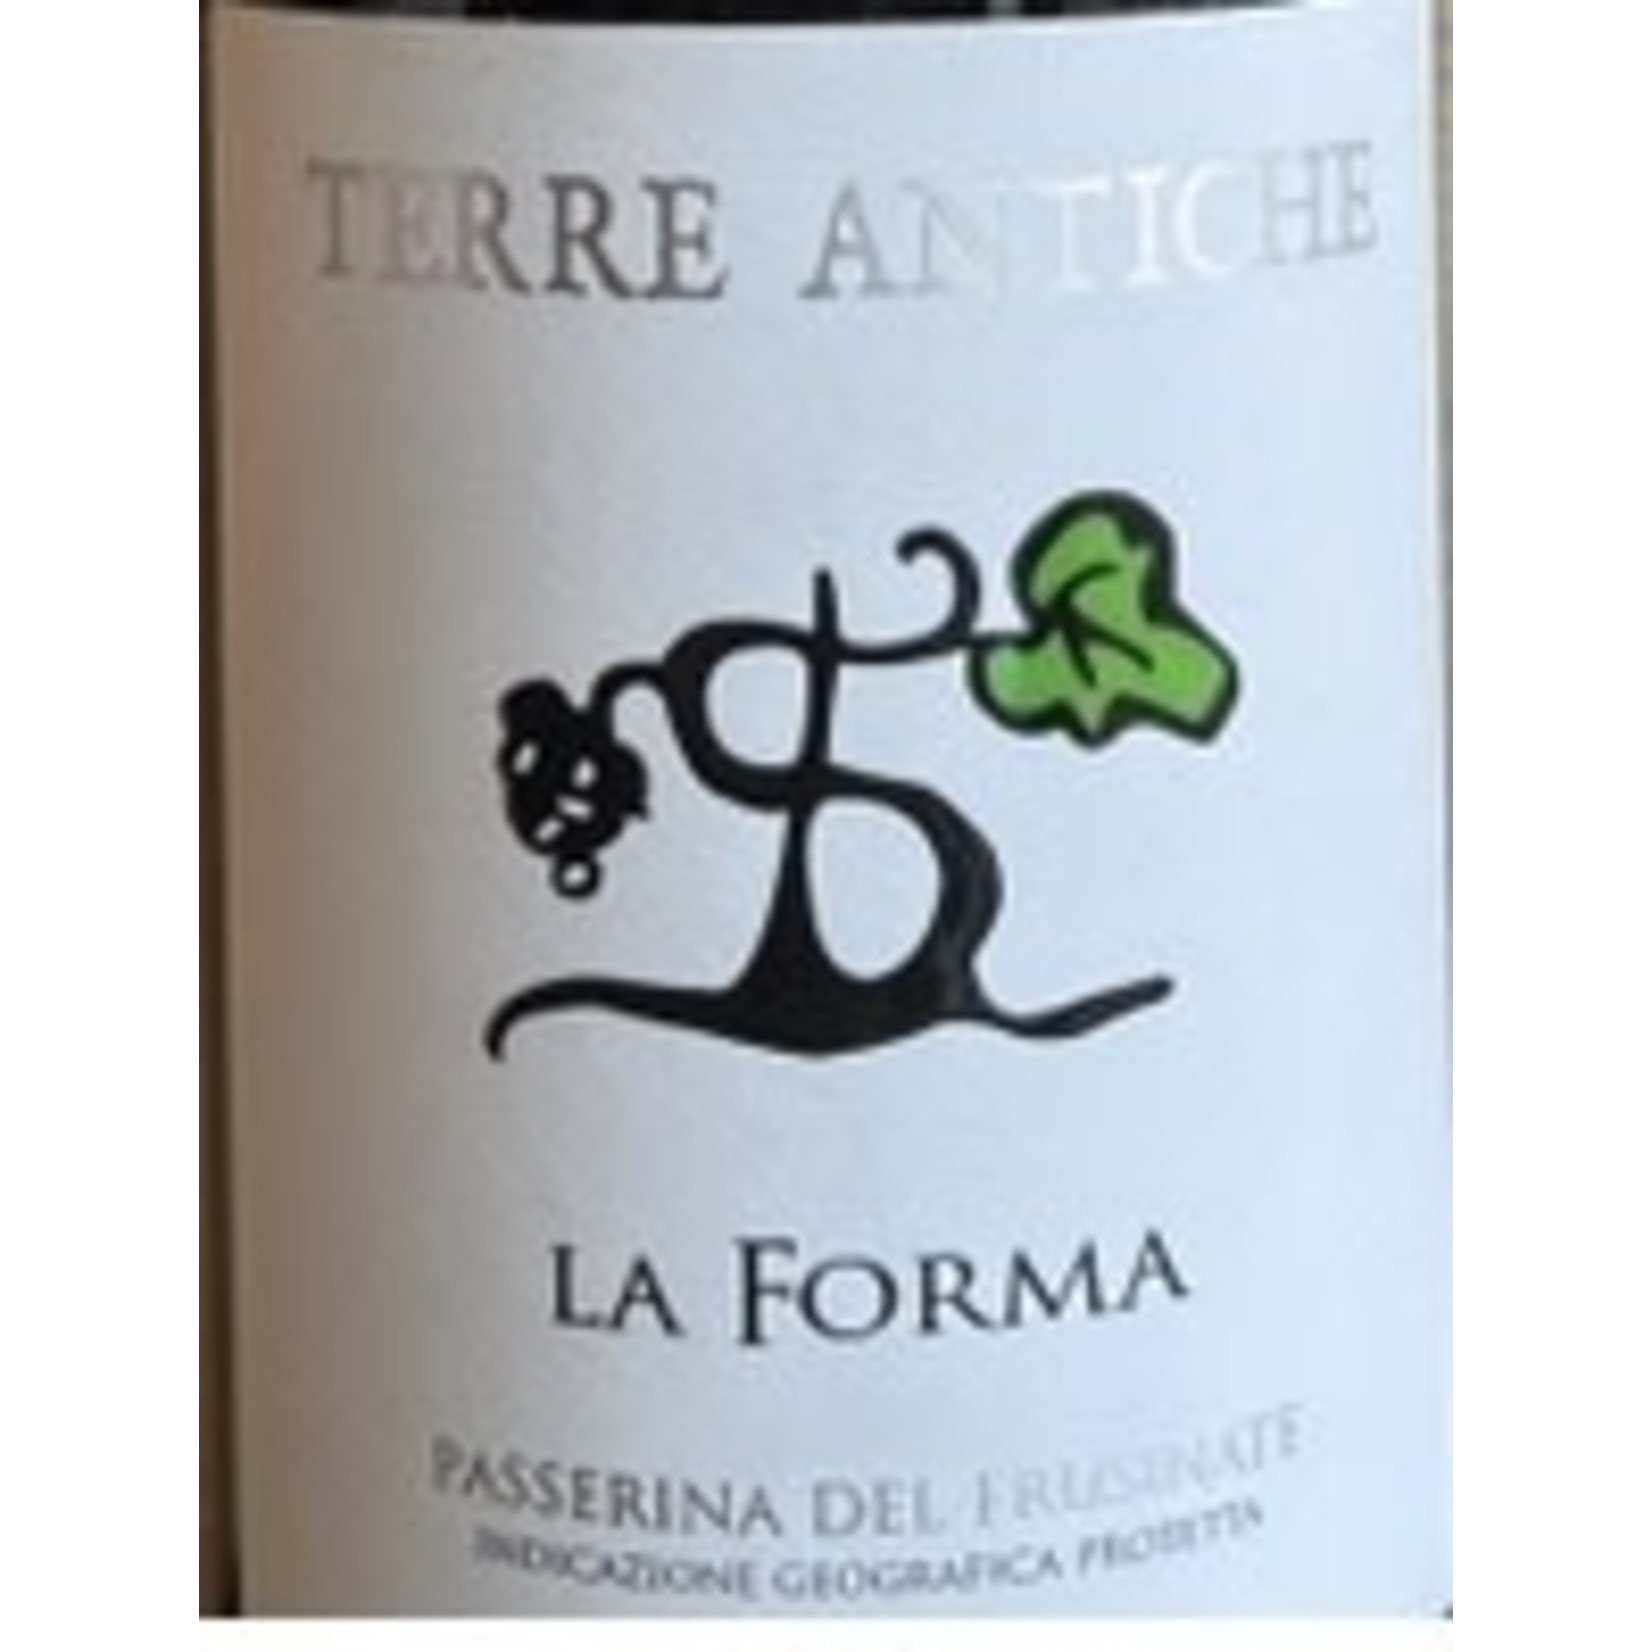 Wine Terre Antiche La Forma Passerina del Frusinate NV